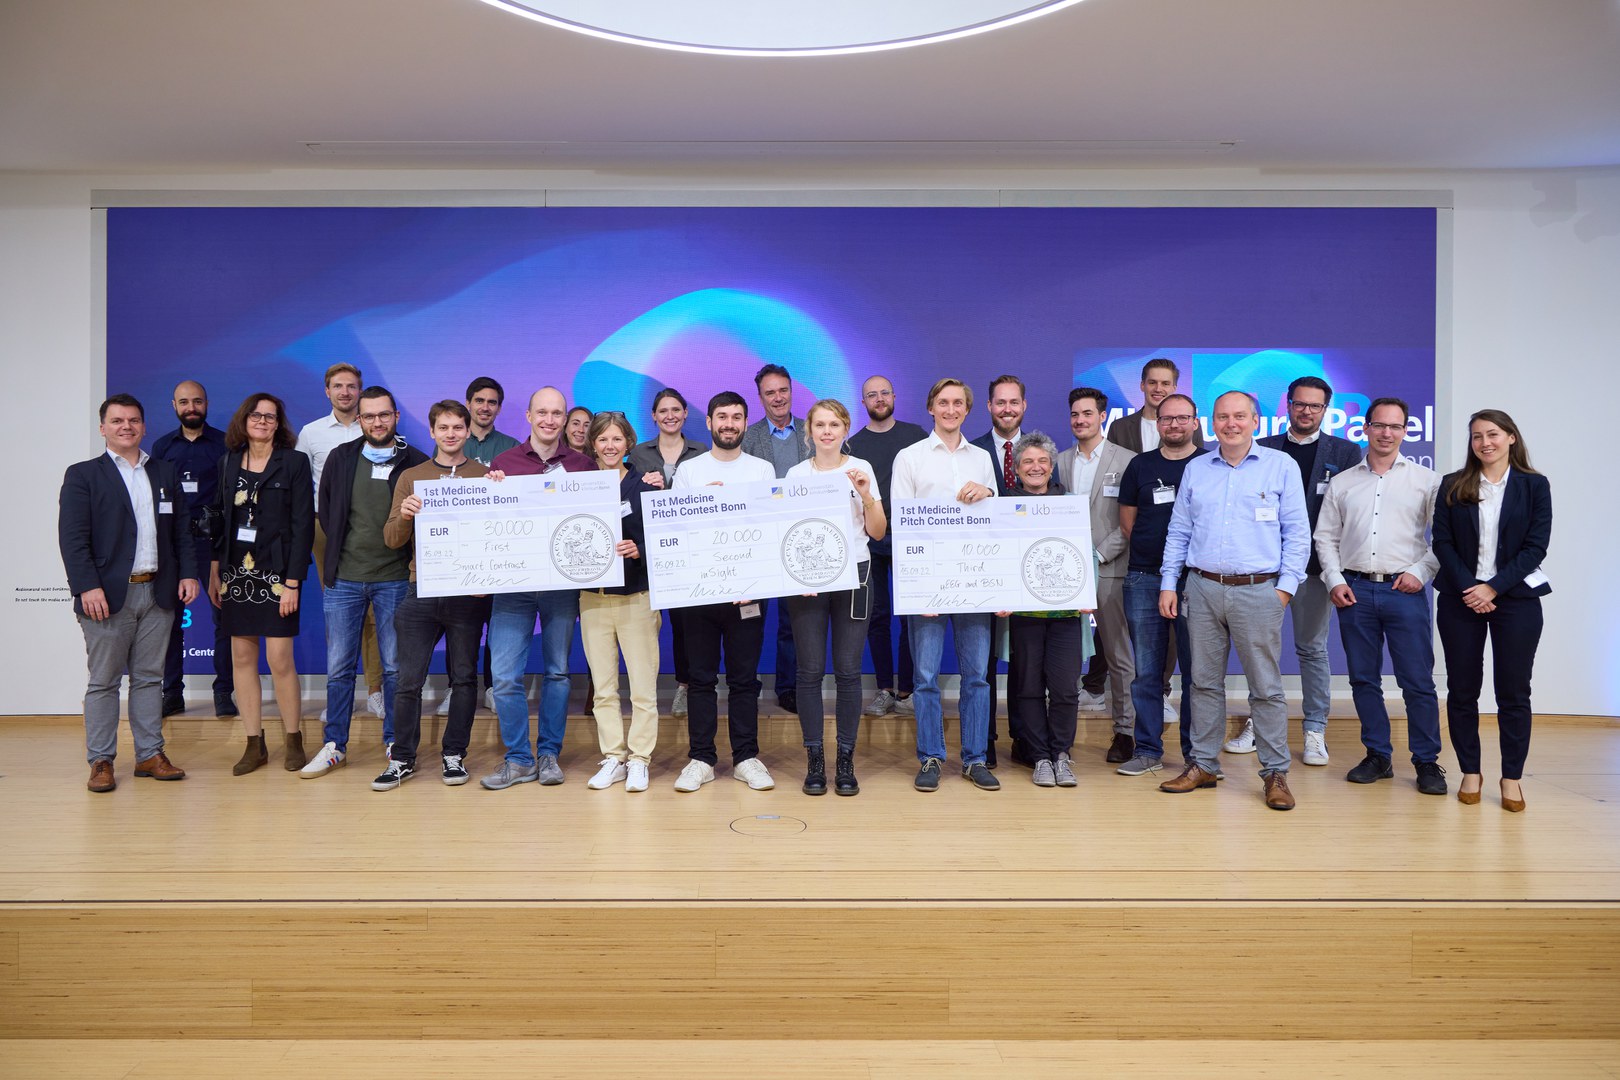 Die Sieger des ersten Pitch-Wettbewerbs der Medizinischen Fakultät - an der Universität Bonn mit weiteren Teilnehmenden und der Jury. Die Gewinnerteams werden finanziell gefördert, damit sie ihre Ideen umsetzen können.